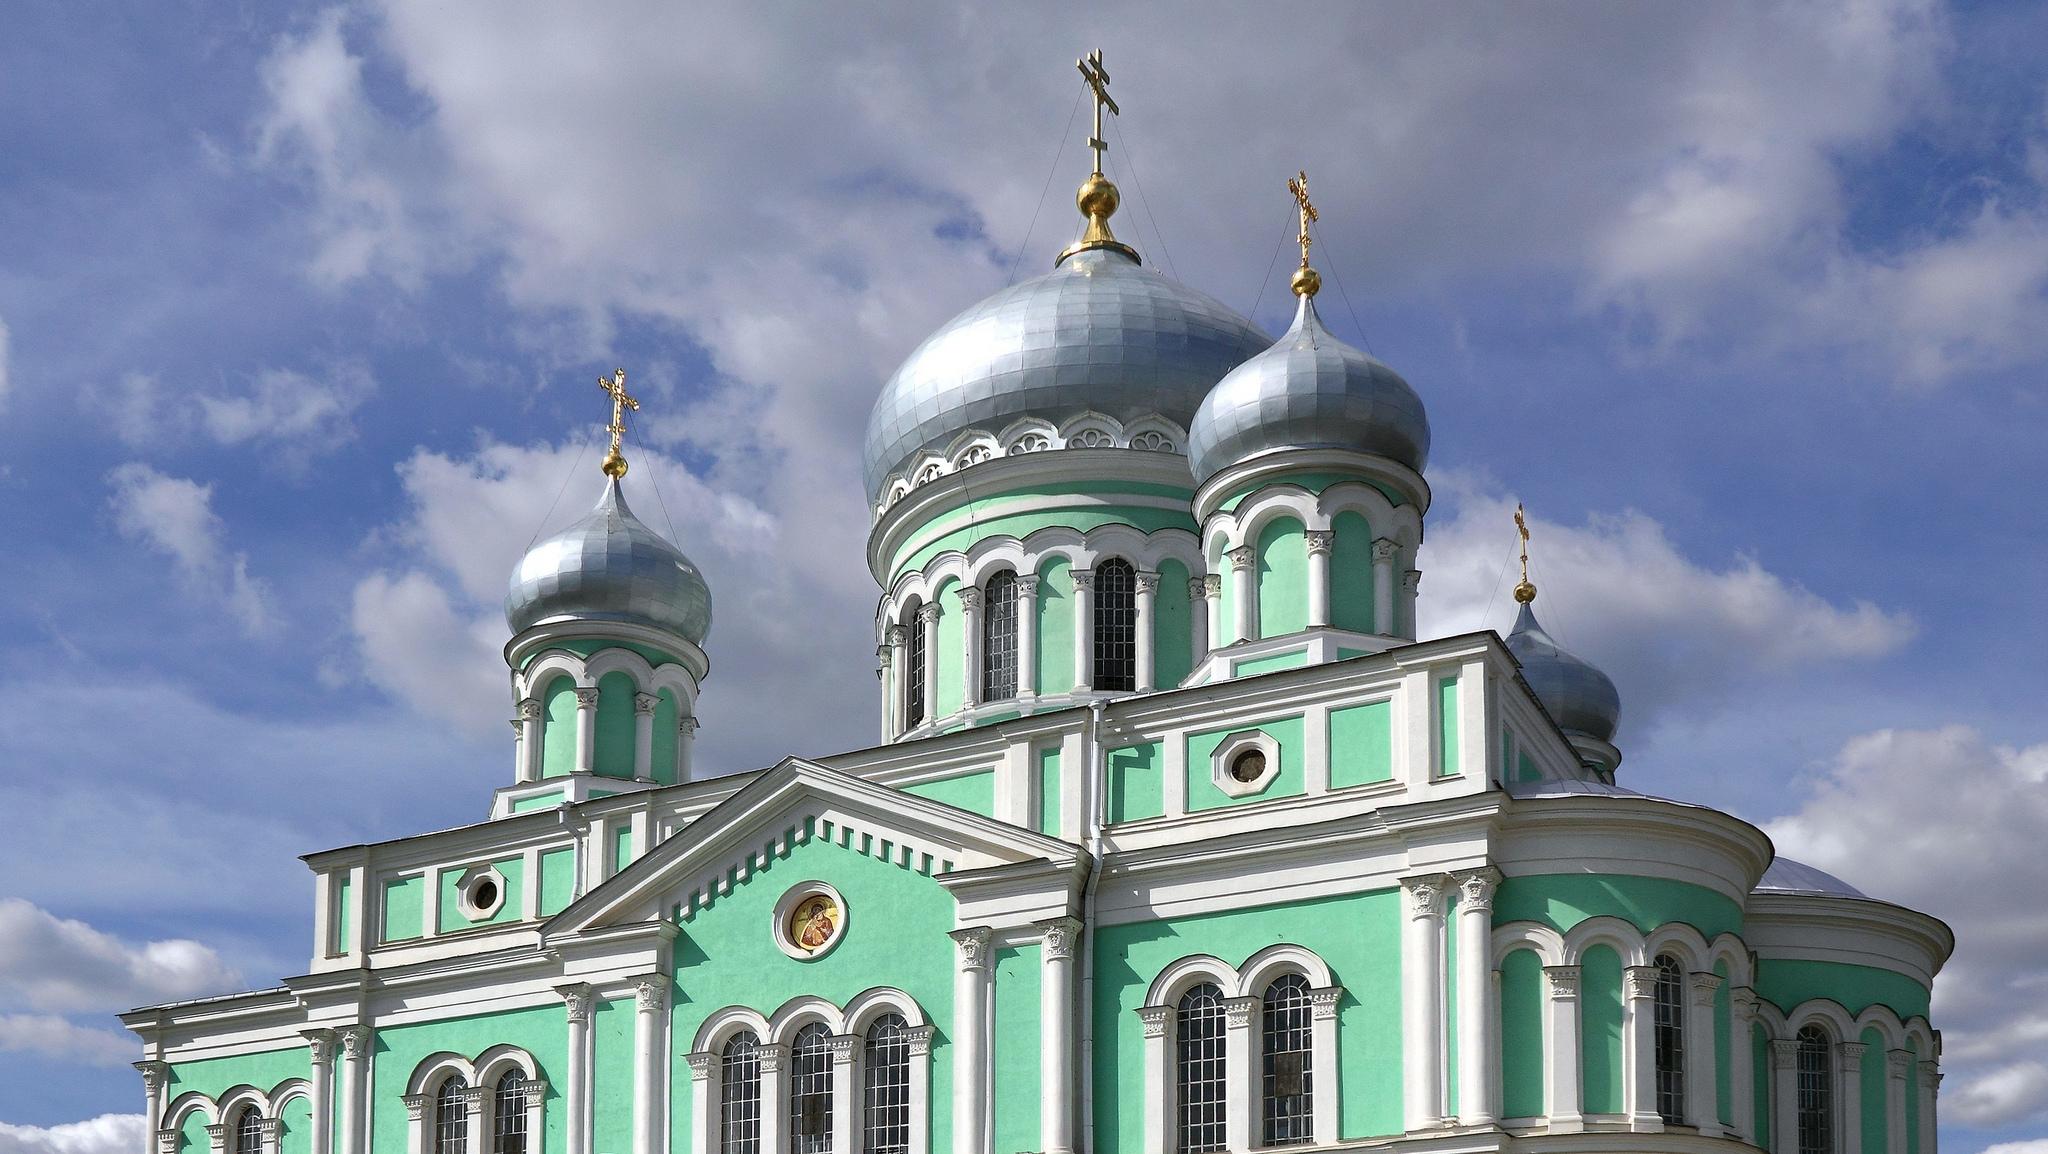 Троицкий Собор. Серафимо-Дивеевский монастырь, автор: Alexxx1979, лицензия: CC BY SA 2.0